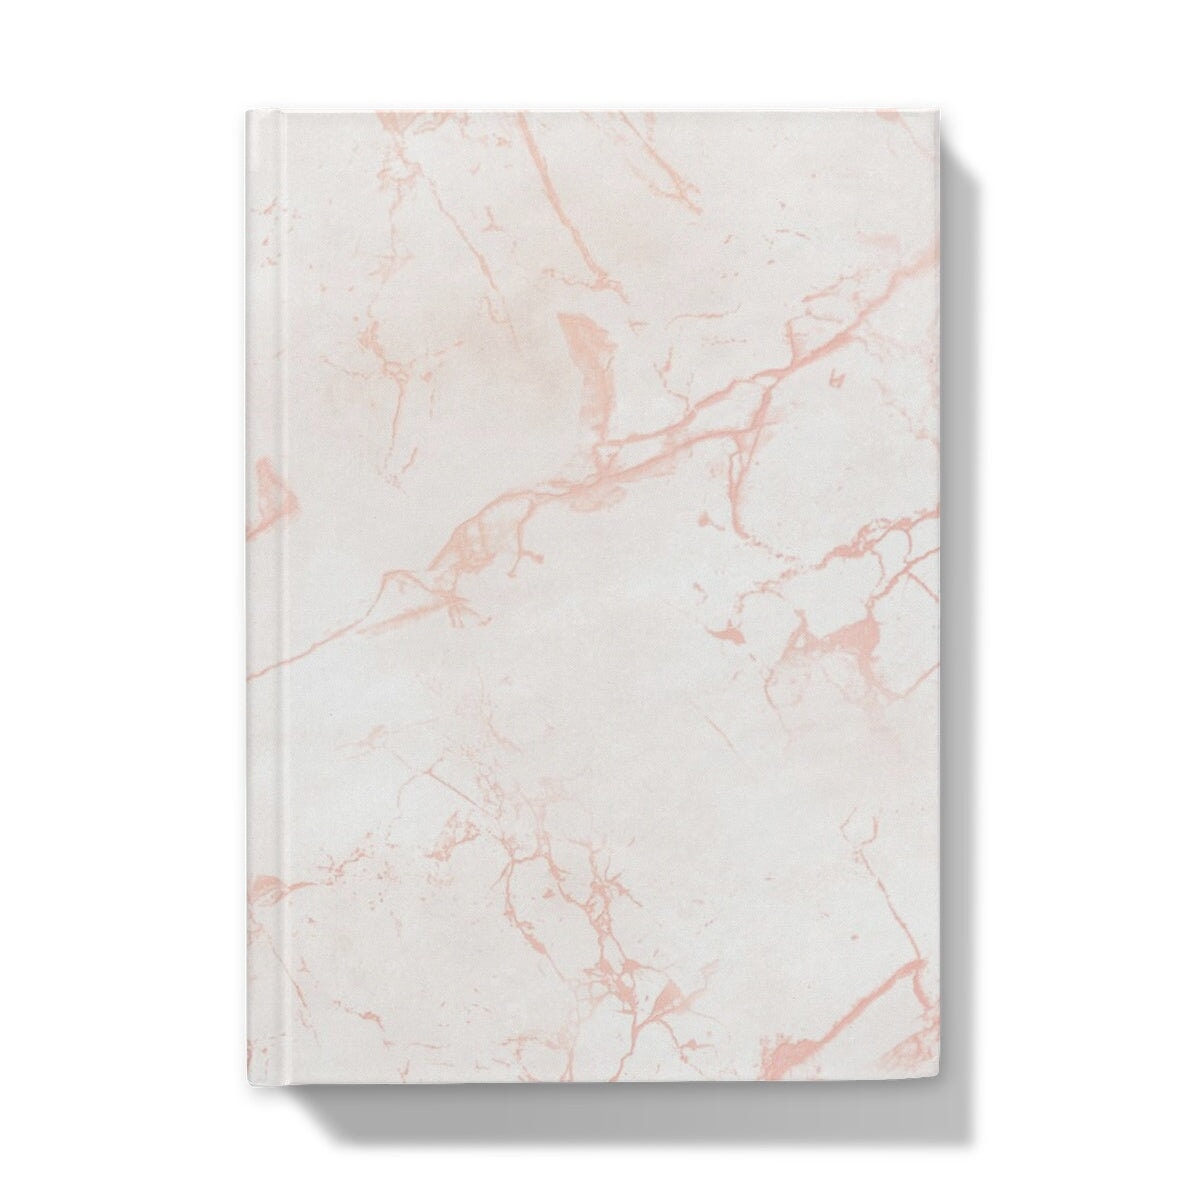 Big Moves - Pink Marble Hardback Journal - Big Moves